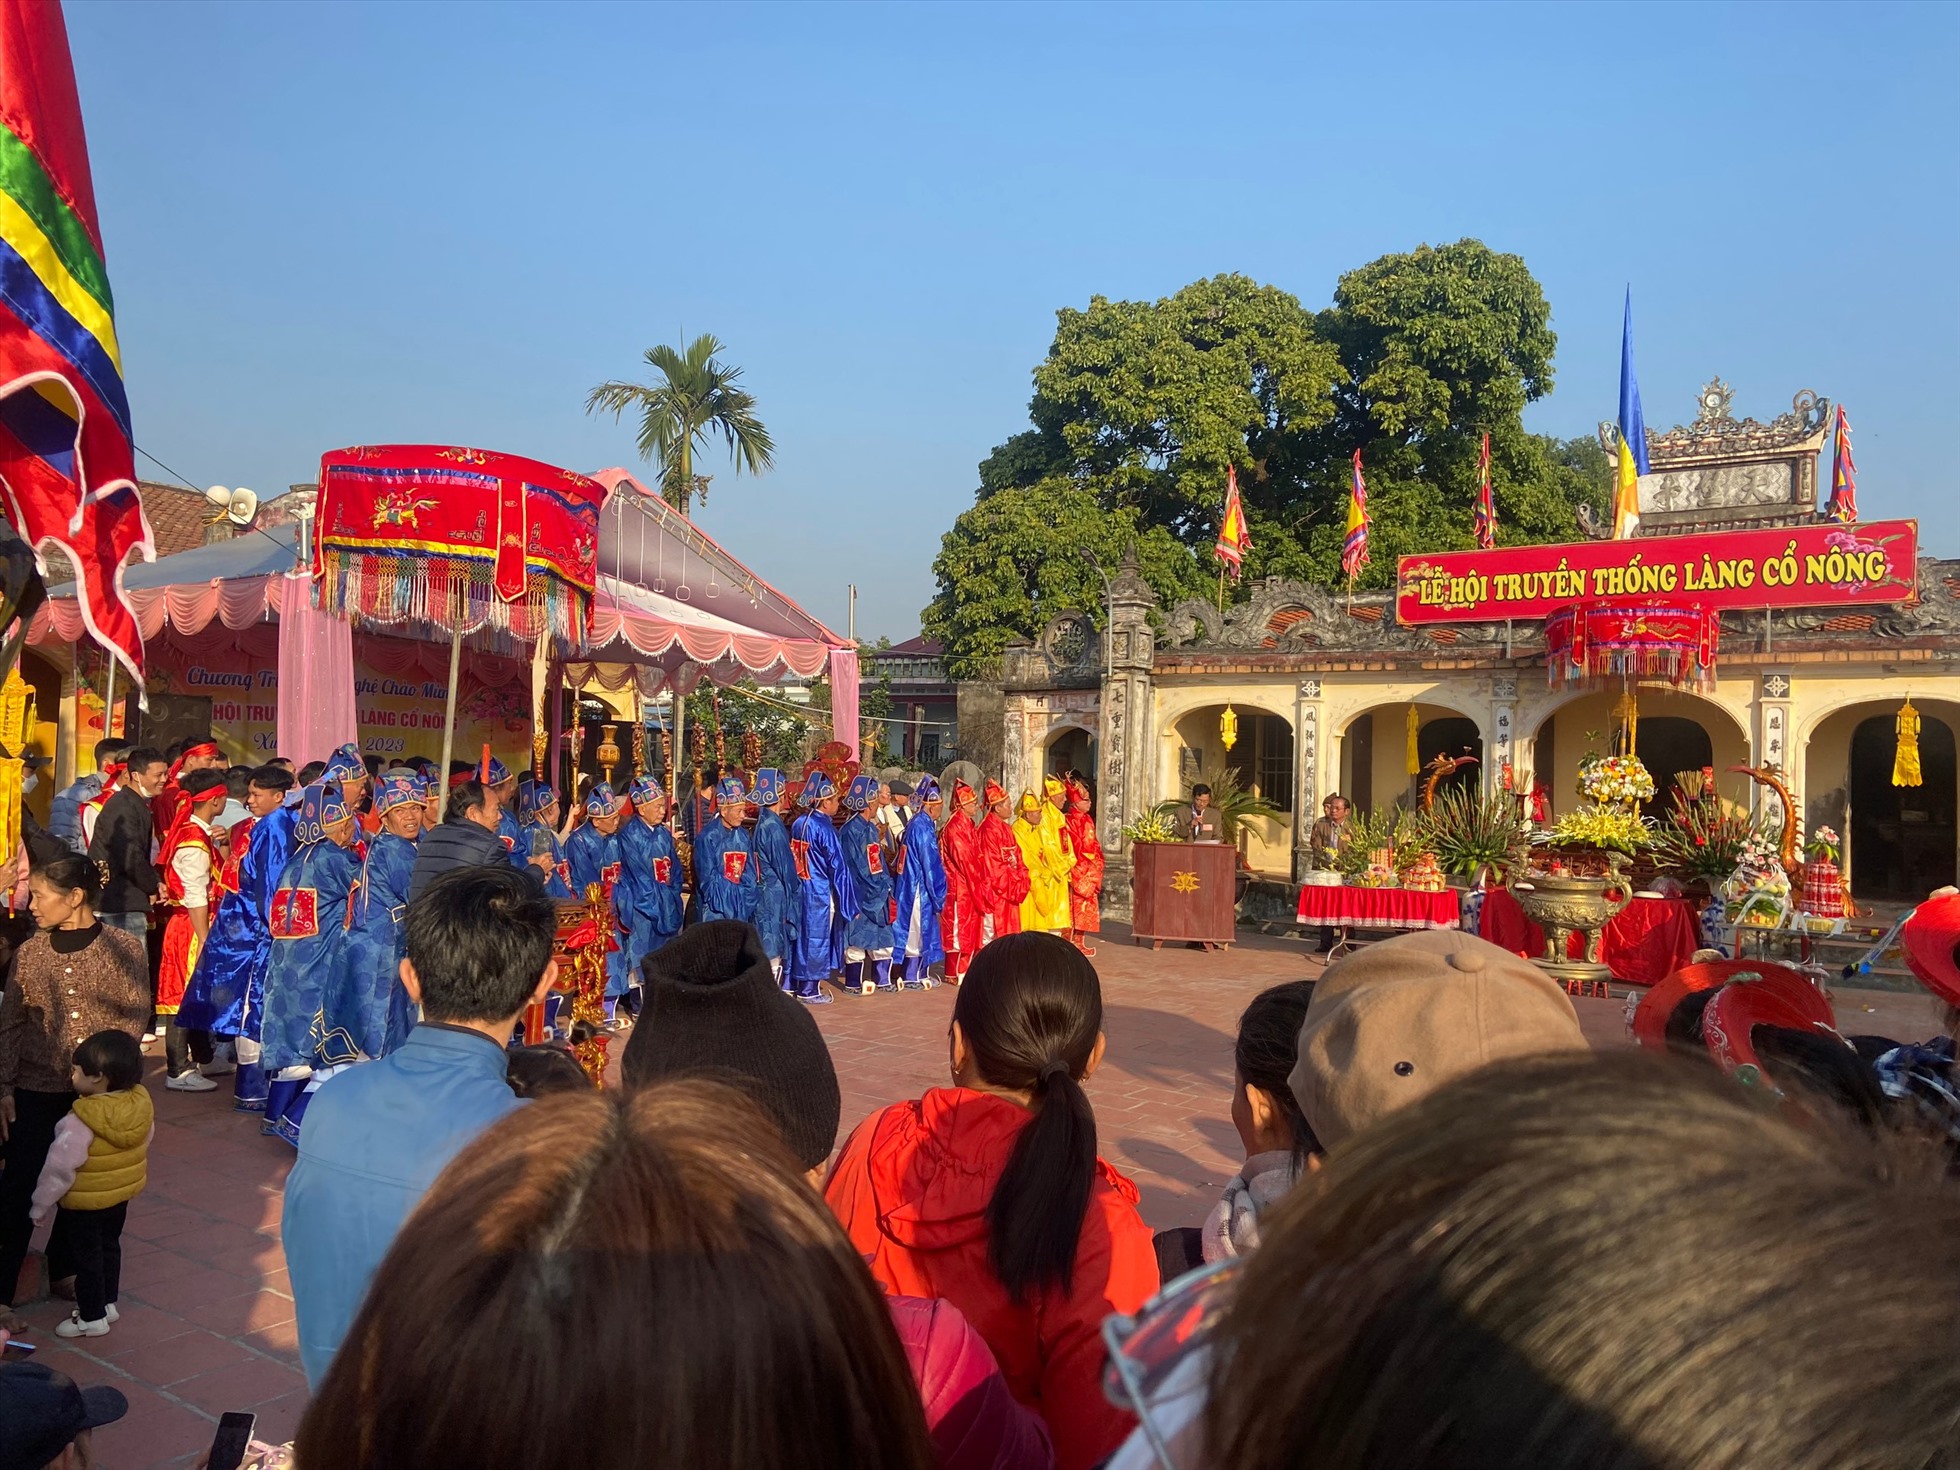 Năm nay lễ hội truyền thống Làng Cổ Nông đã diễn ra theo đúng kế hoạch, người dân địa phương phấn khởi tham gia . Ảnh: Nguyễn Duy.